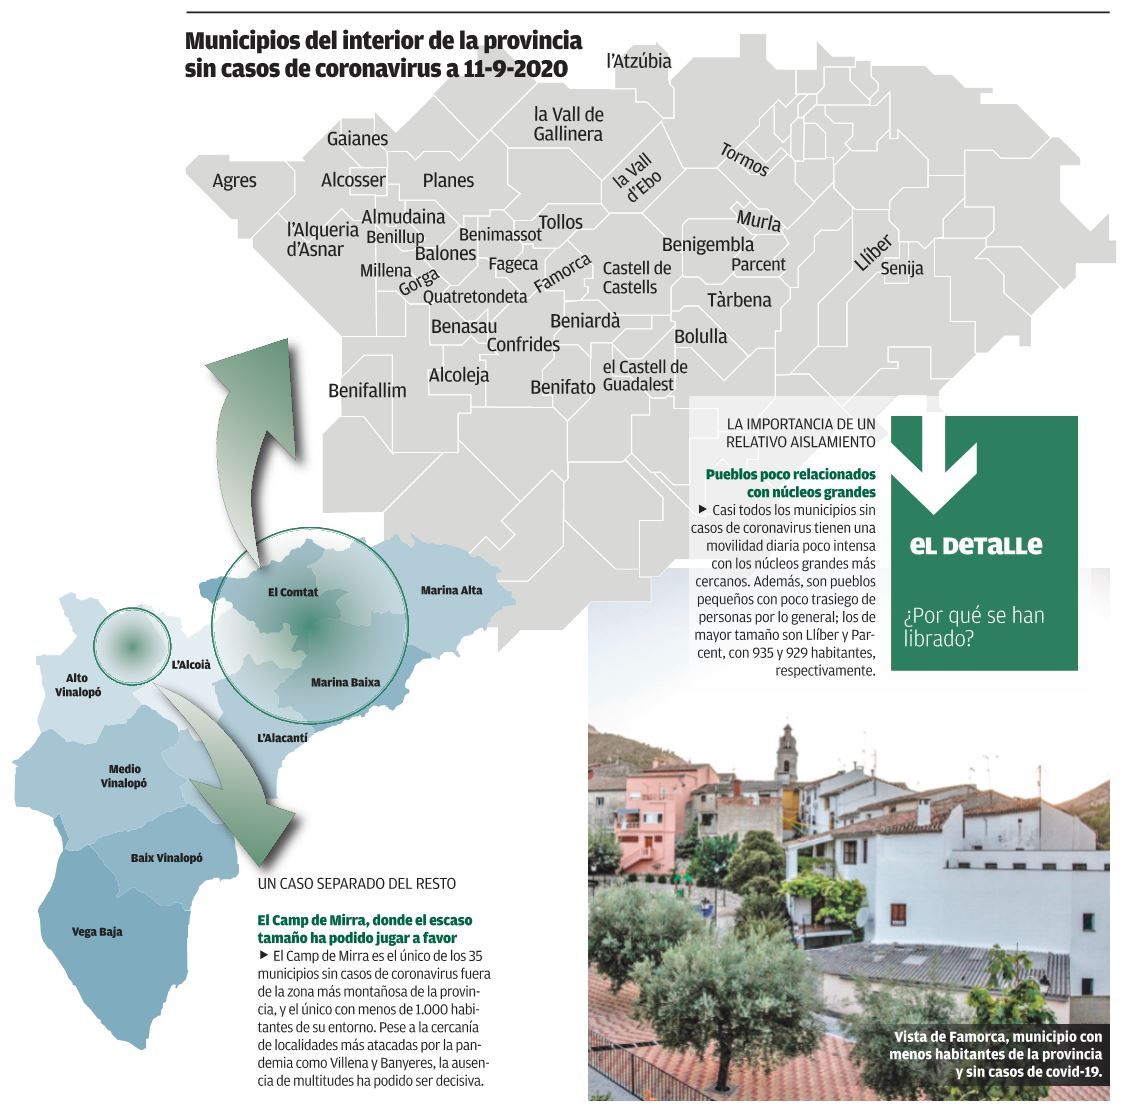 Municipios del interior de la provincia sin casos de coronavirus a 11-9-2020.